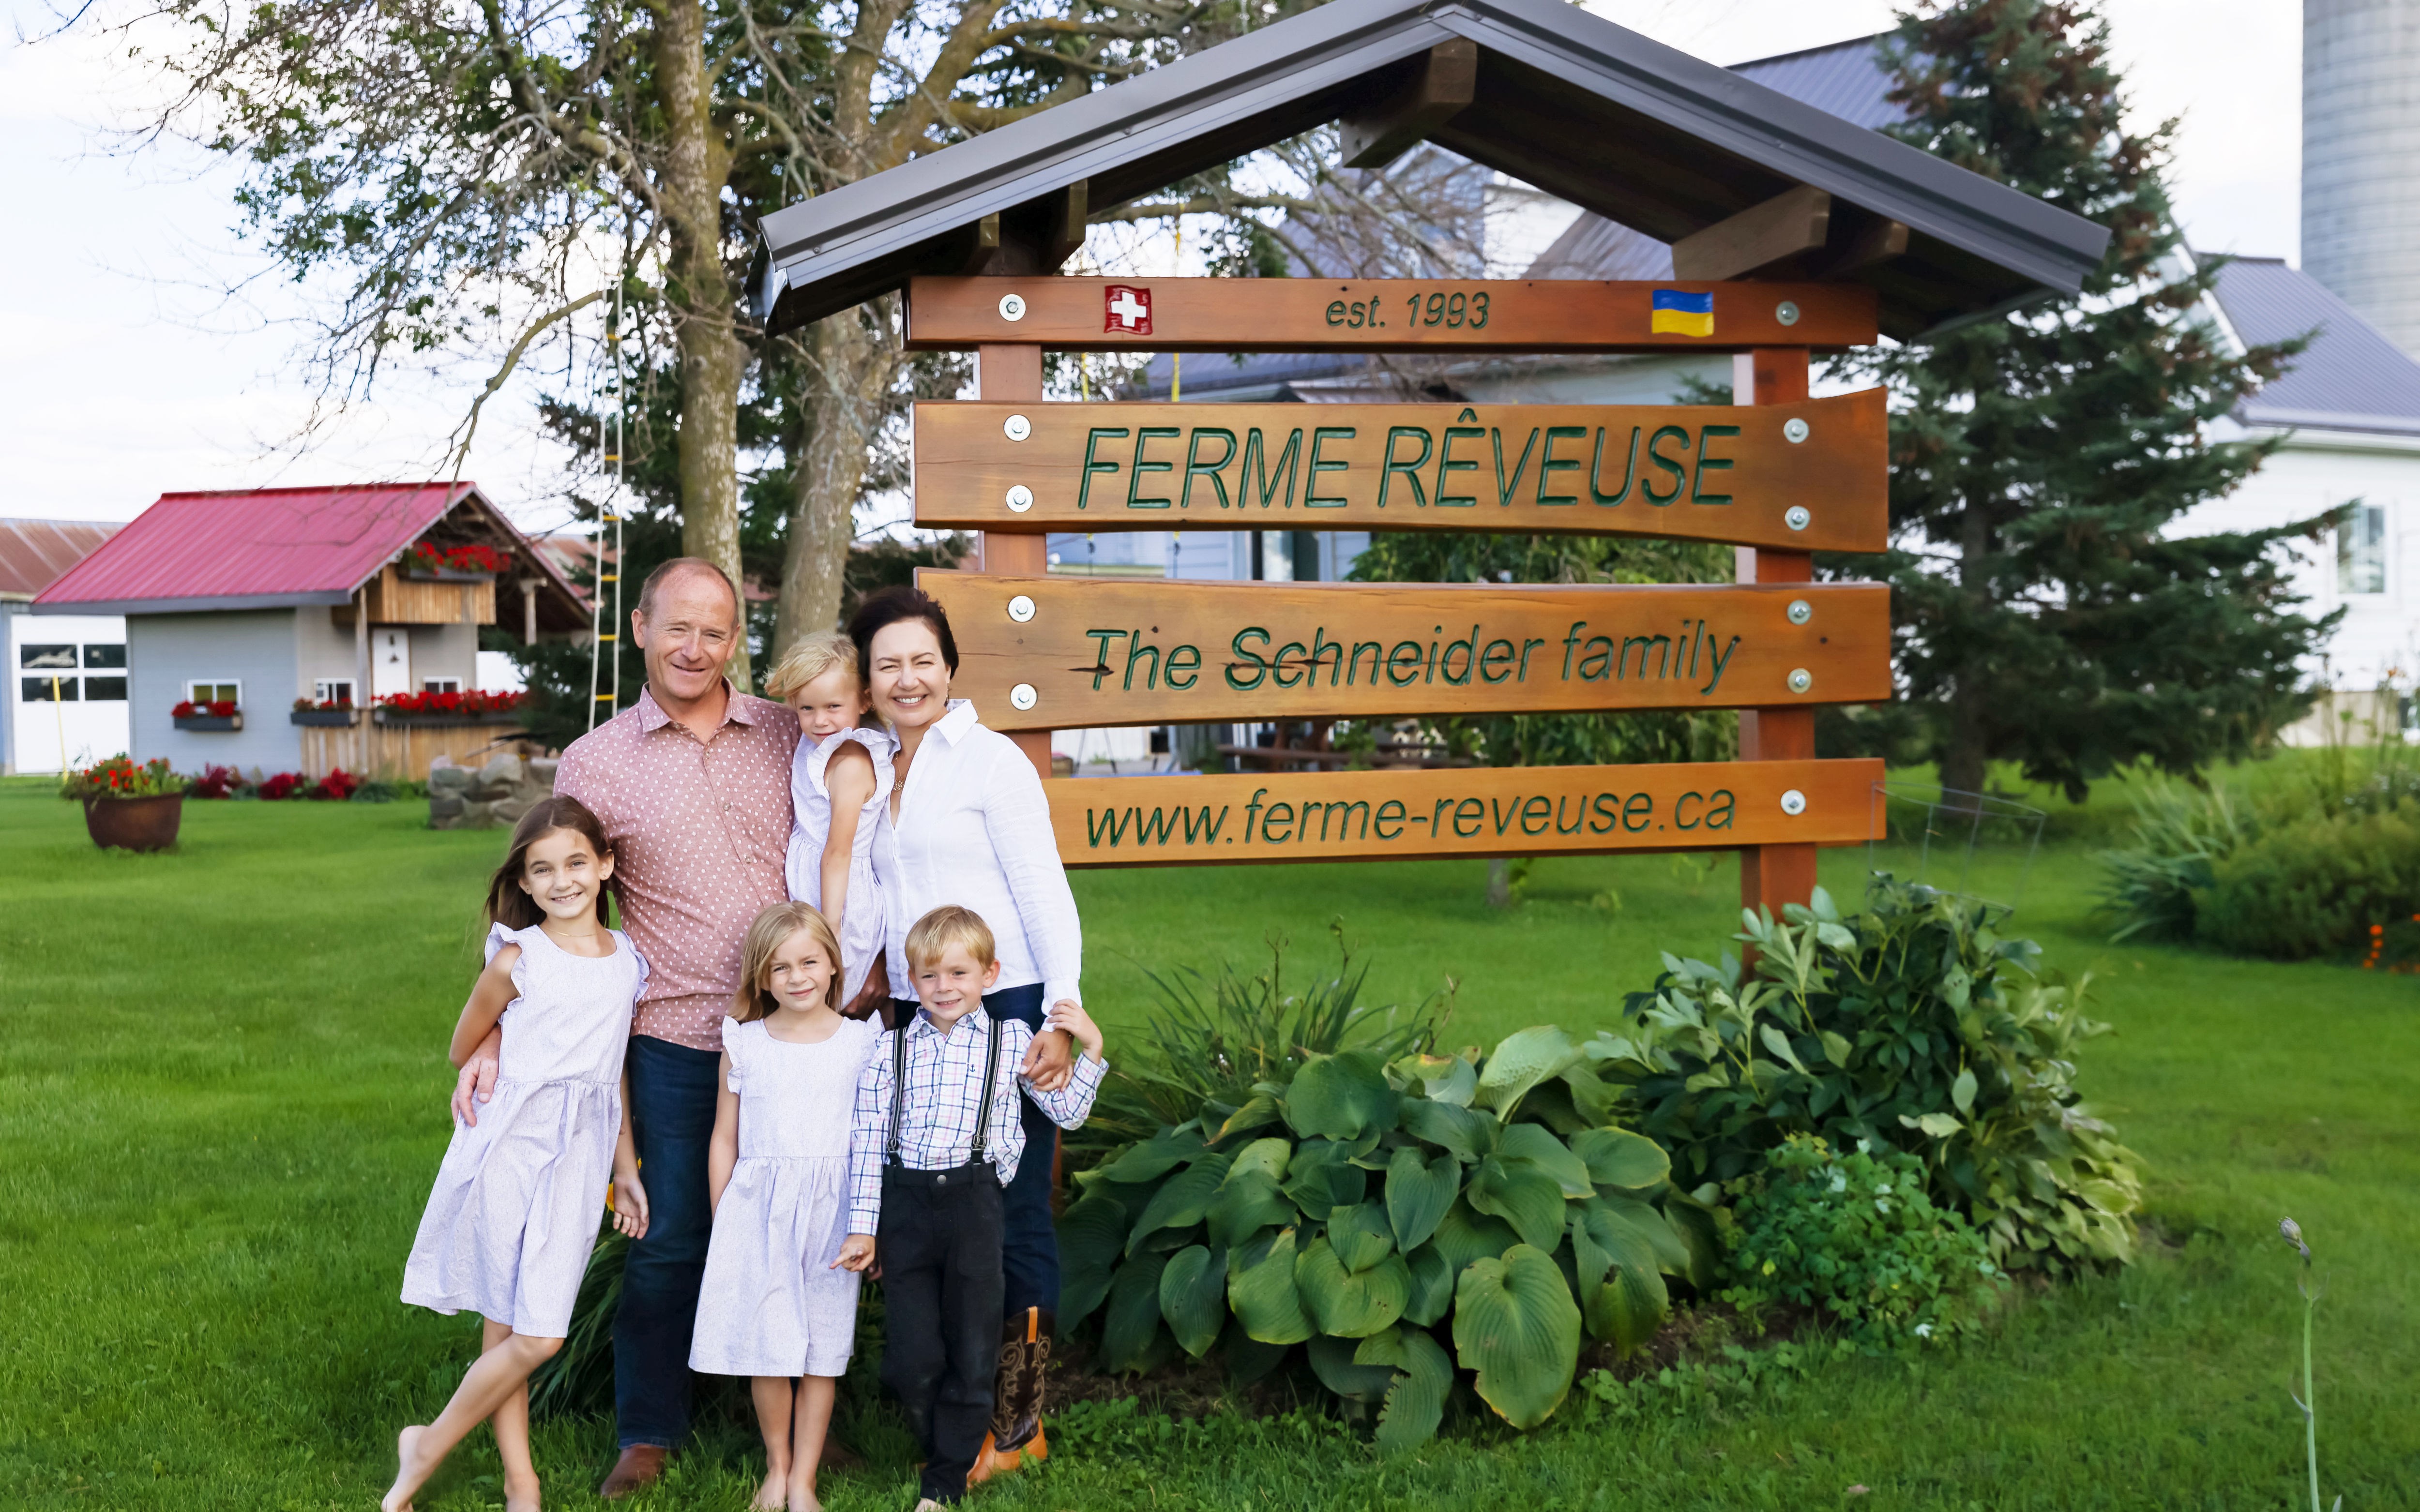 Les propriétaires Kornel et Olga Schneider et leurs quatre enfants devant un panneau en bois portant le nom de leur ferme, leur site web, leur histoire et leur origines.